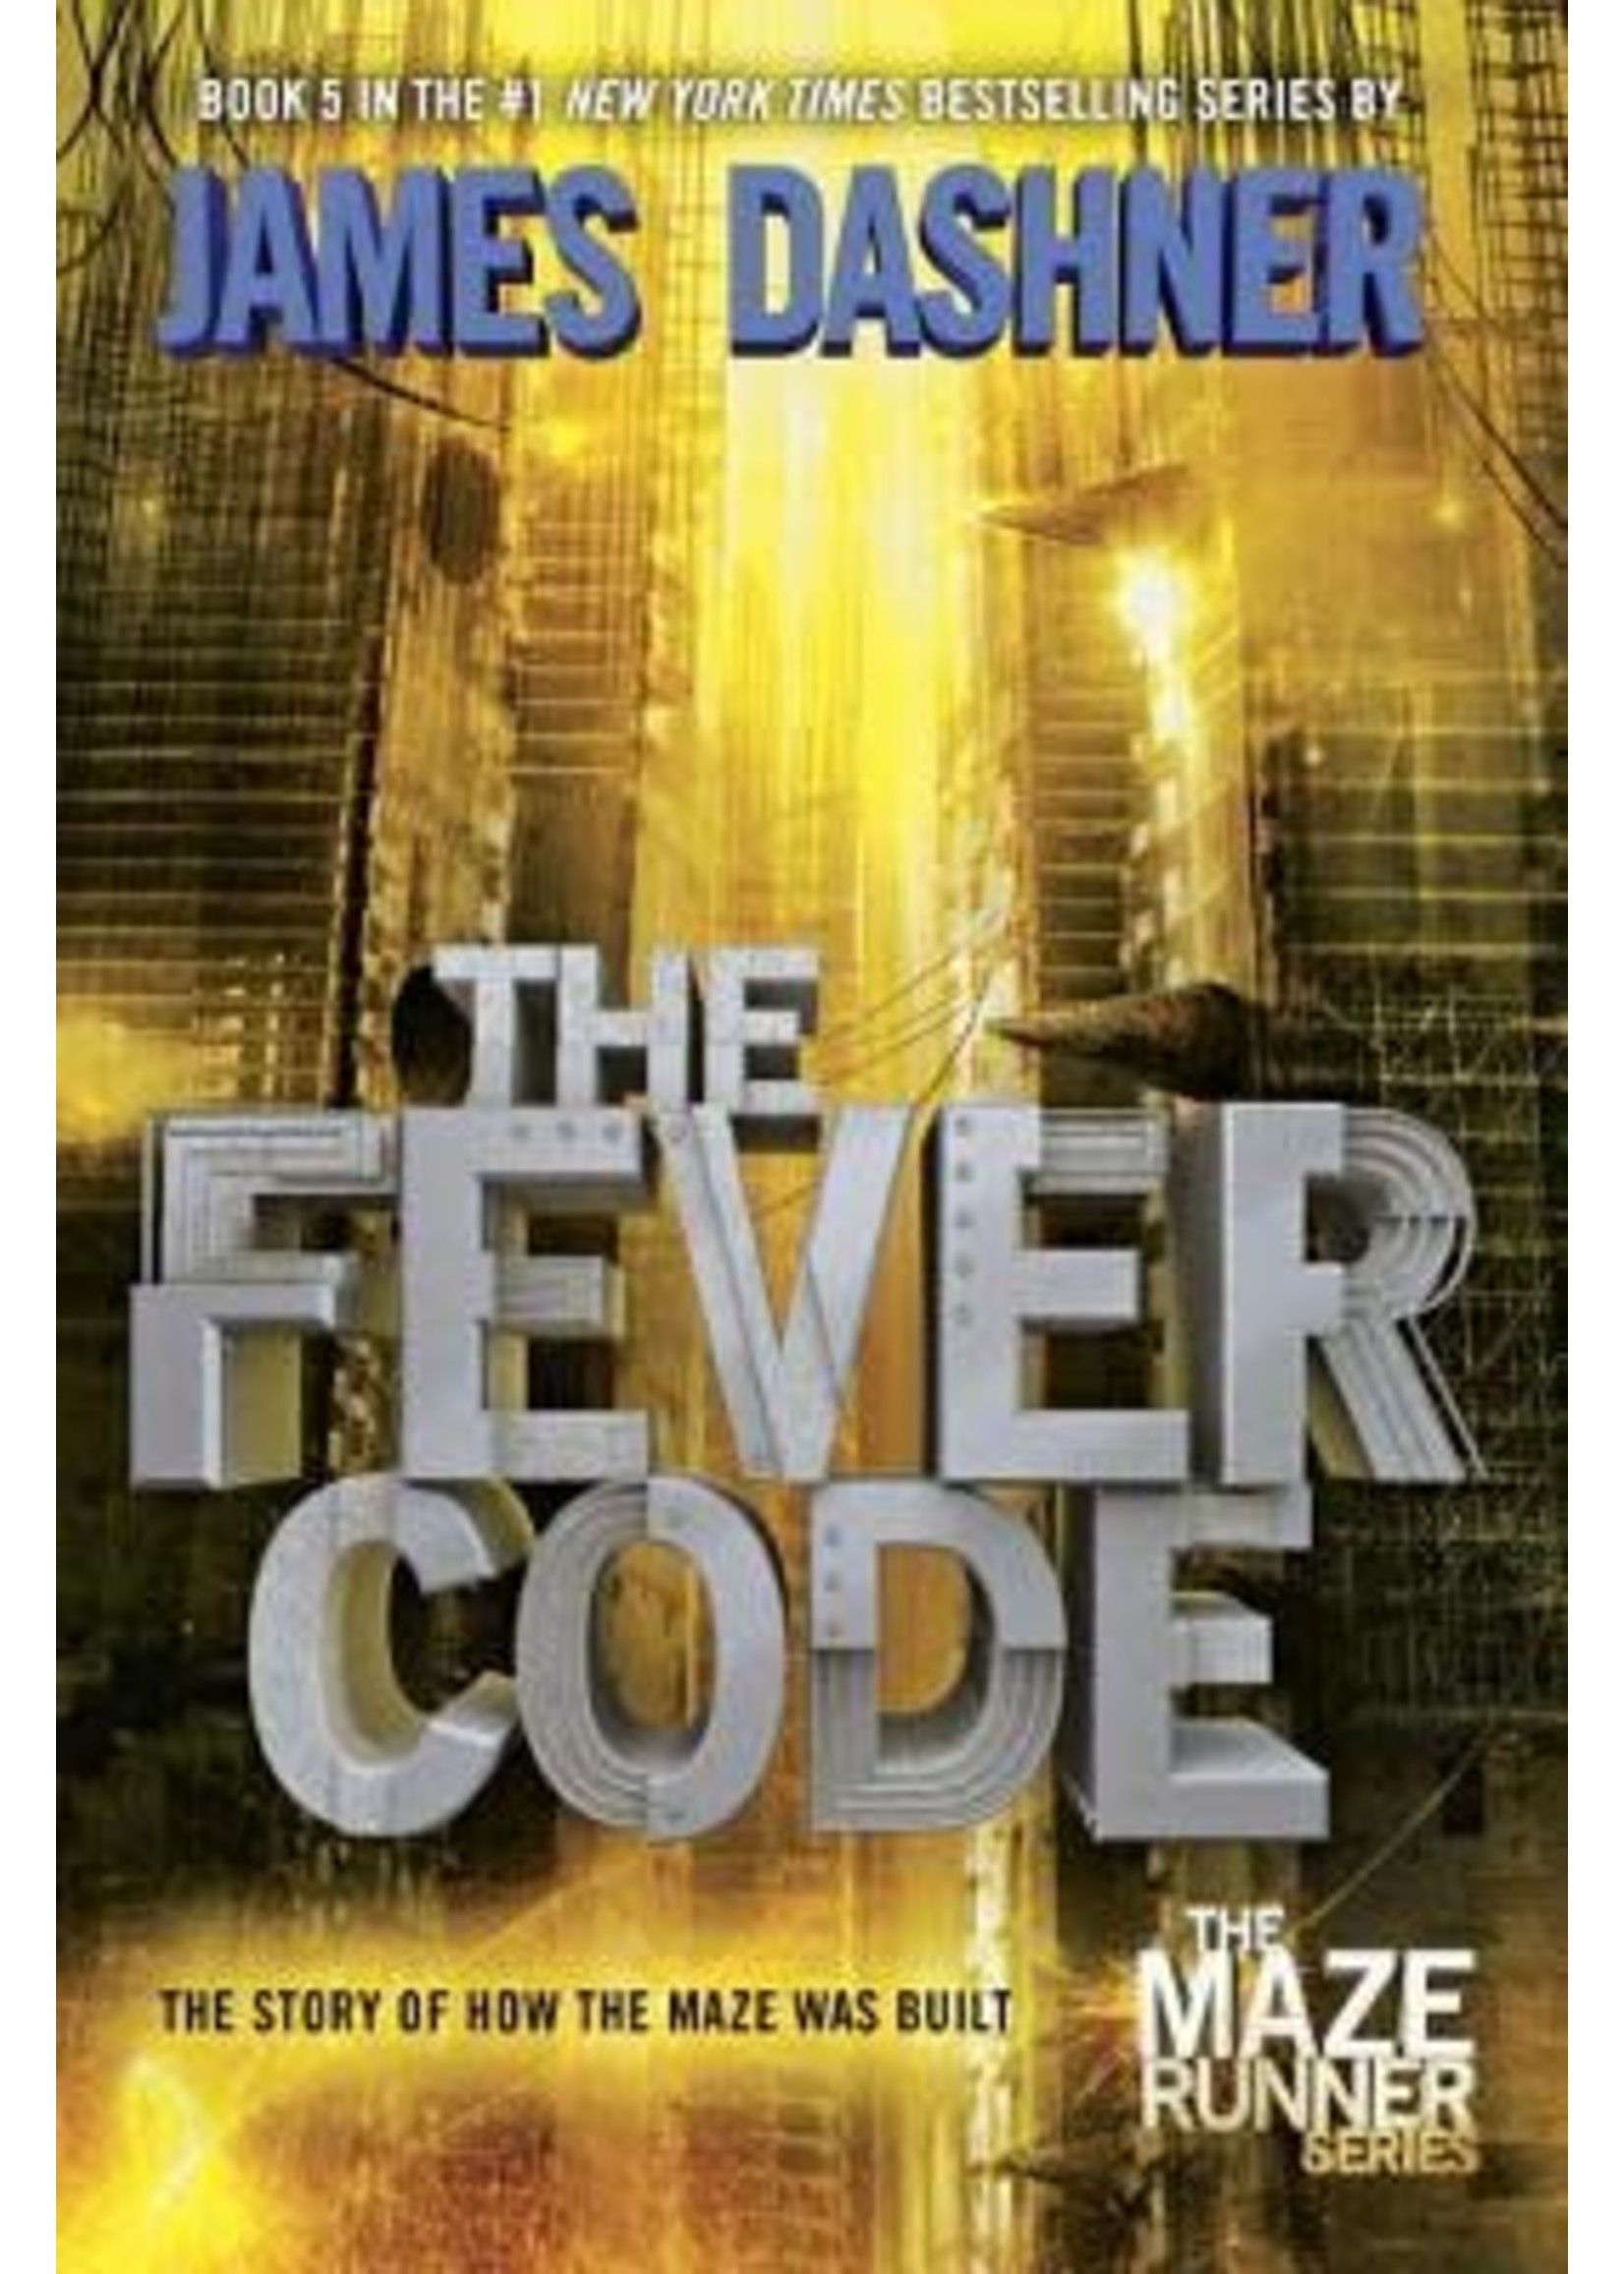 The Fever Code (The Maze Runner #0.5) by James Dashner